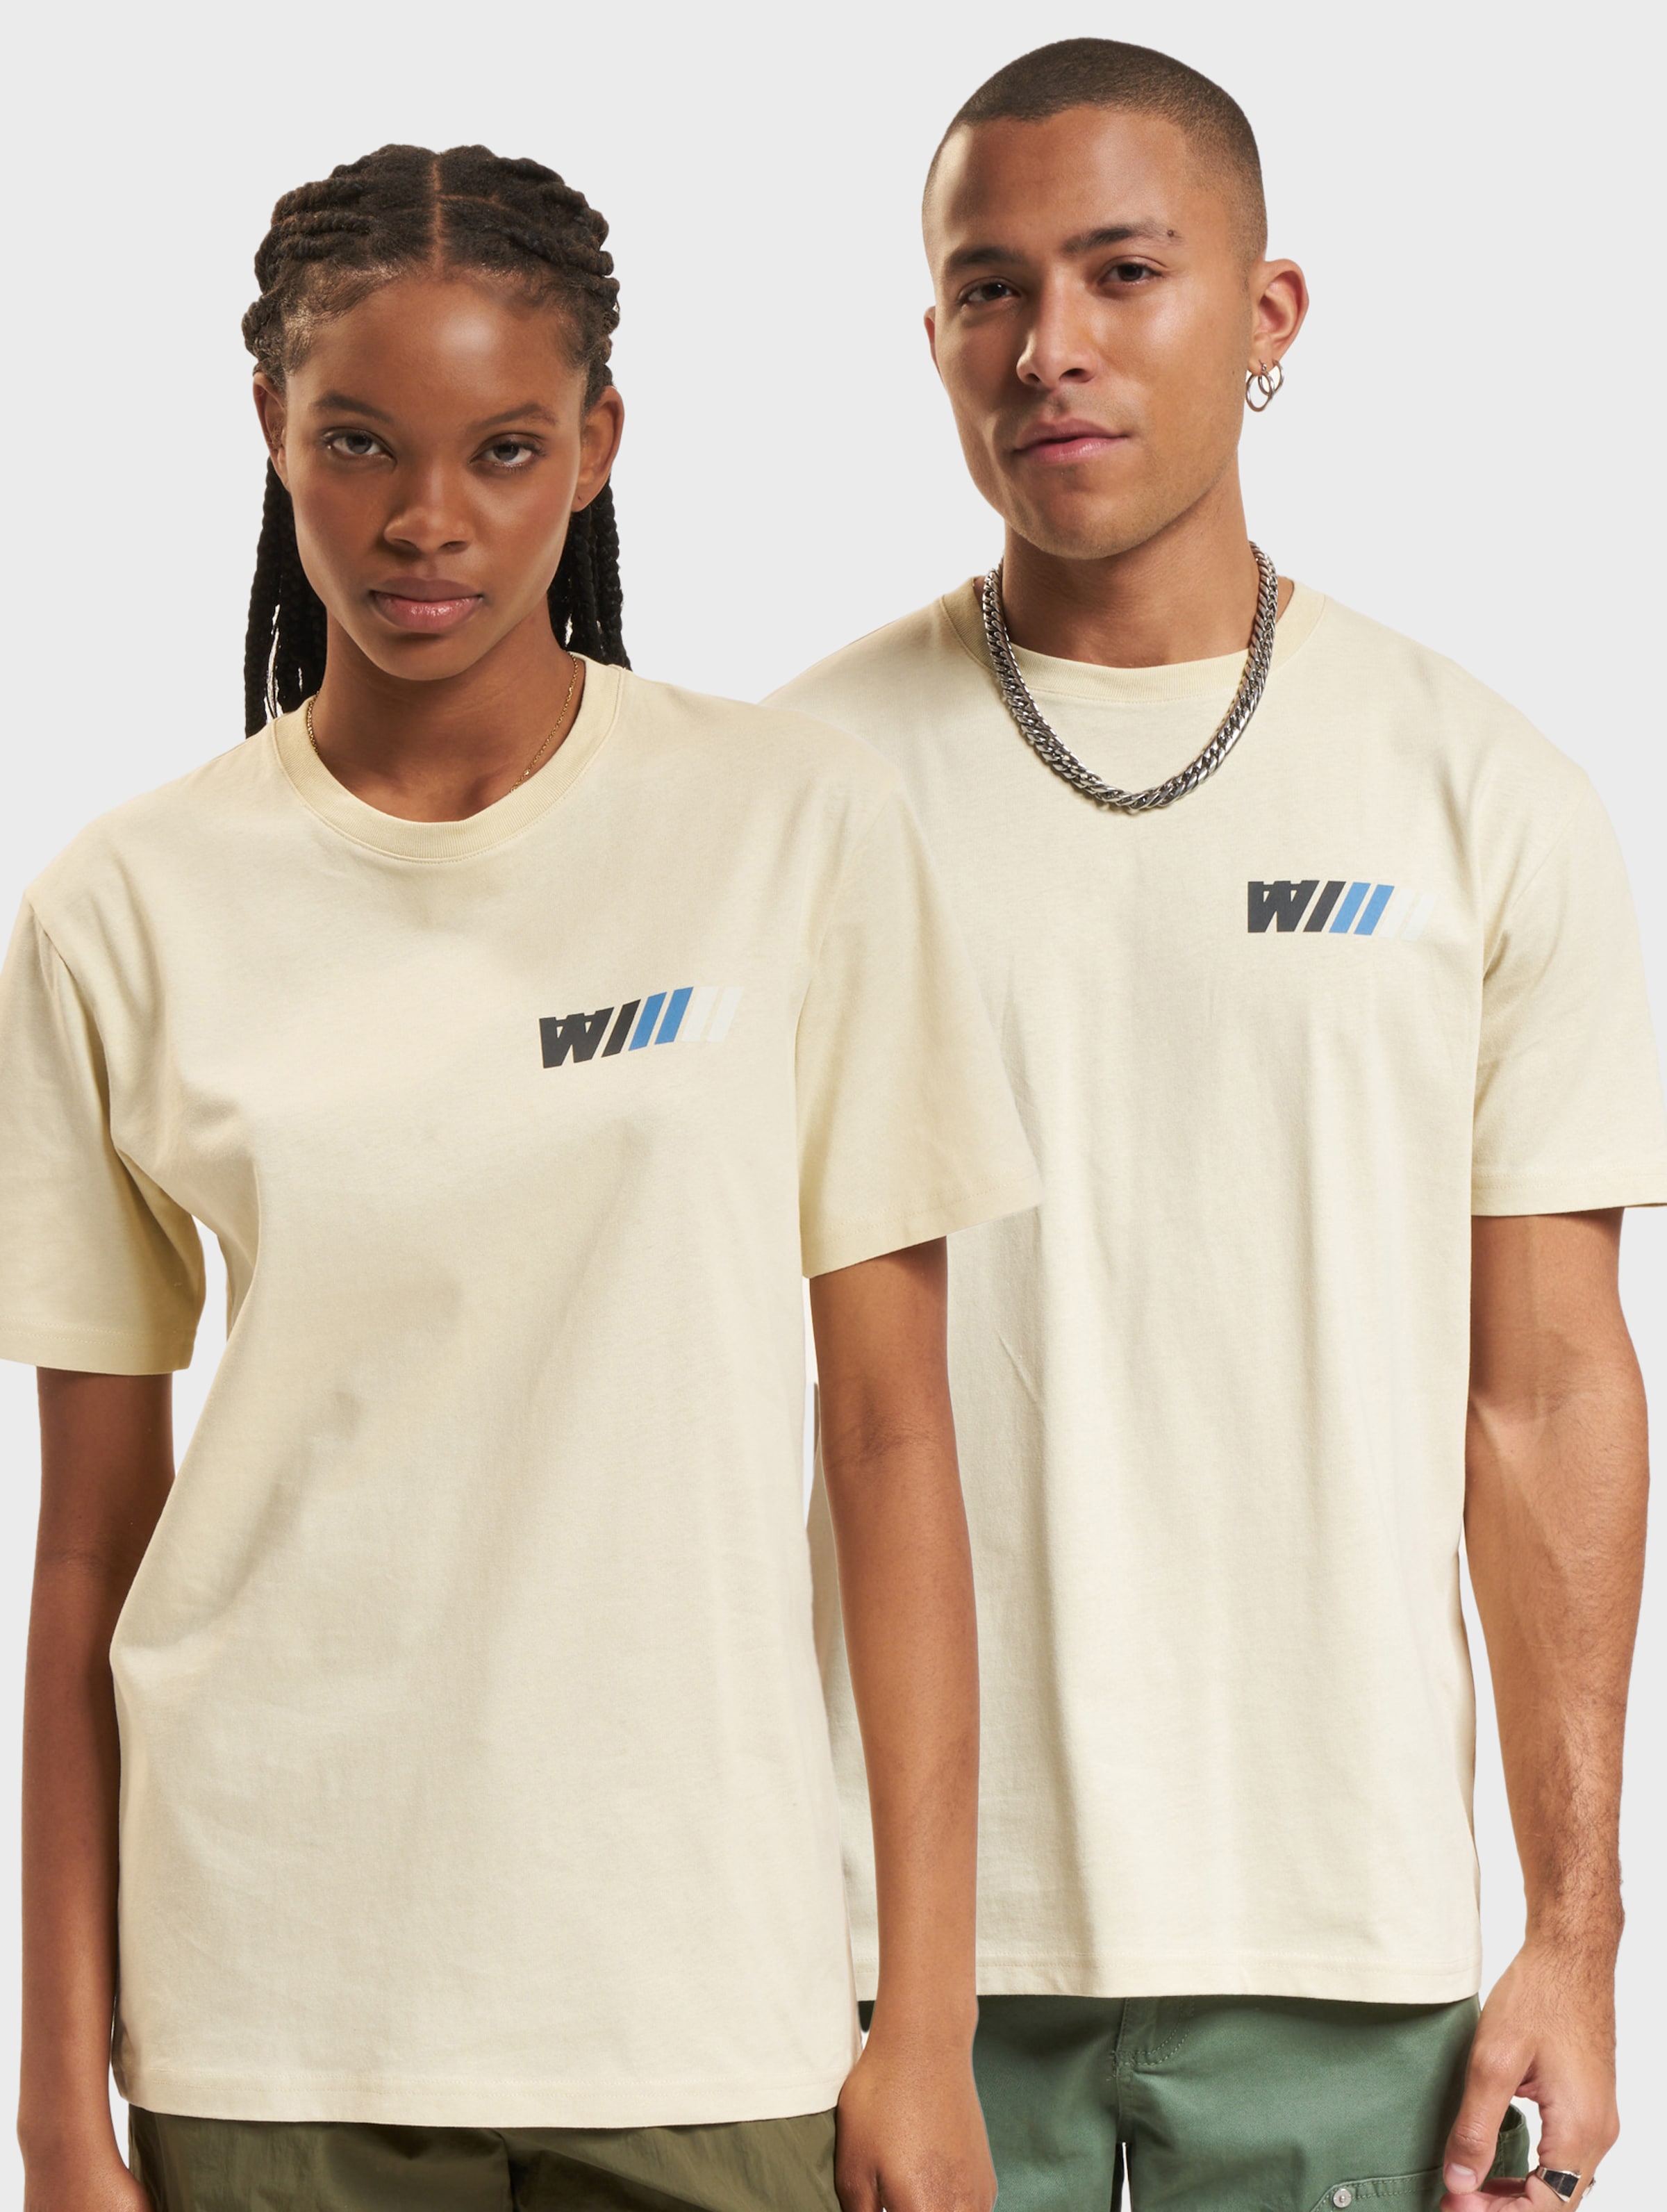 Wood Ace Dealership T-Shirt Frauen,Männer,Unisex op kleur beige, Maat XL